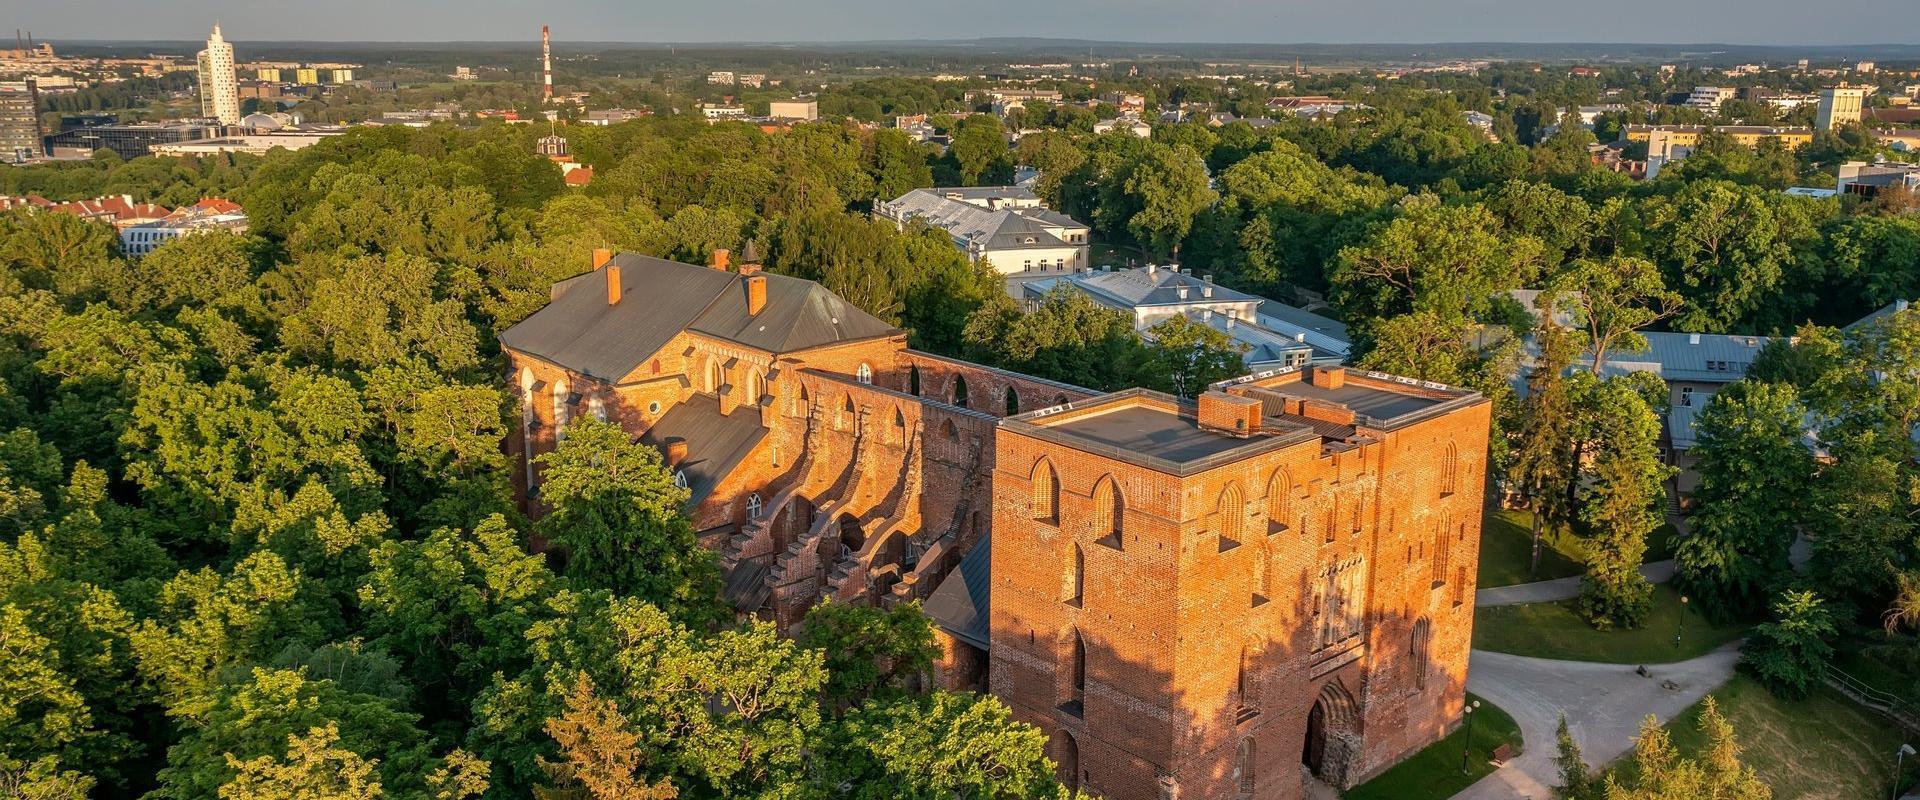 Kauniilla Toomemäellä sijaitseva Tarton tuomiokirkko on yksi suurimmista ja ainut kaksitorninen keskiaikainen kirkko Virossa. Kirkkoa alettiin rakenta